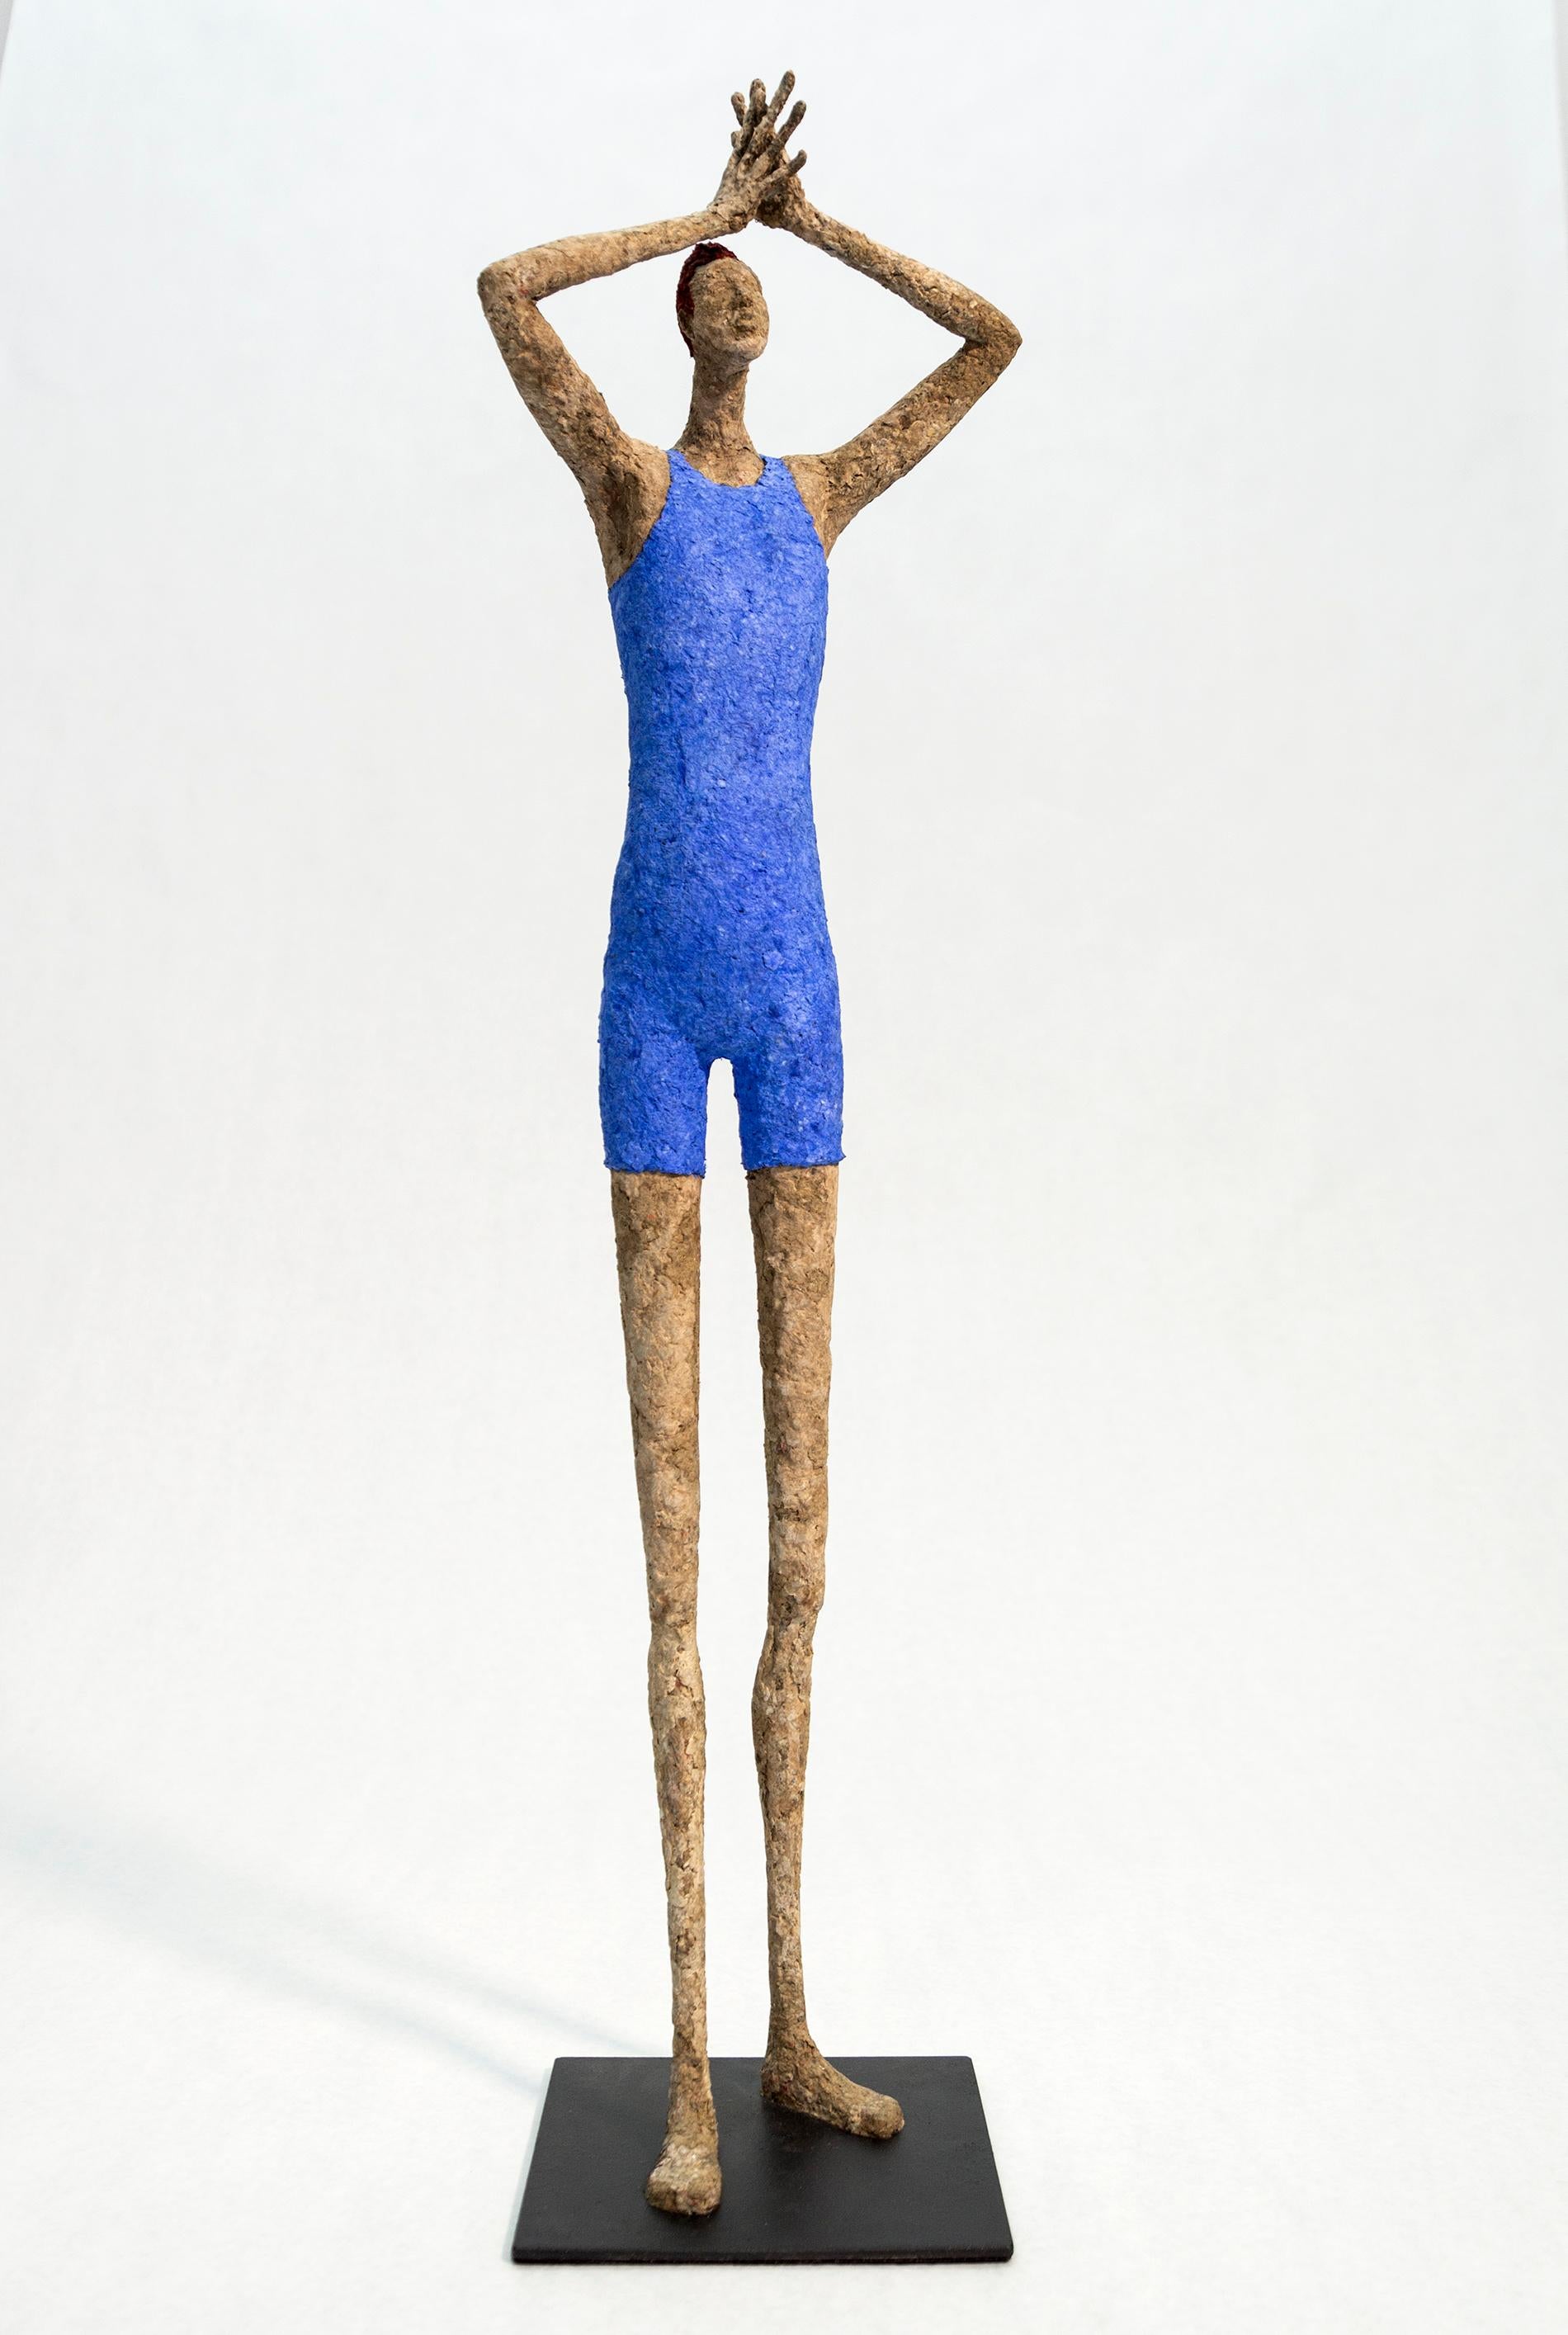 The Big Swimmer - figurative, paper Mache sculpture - Sculpture by Paul Duval